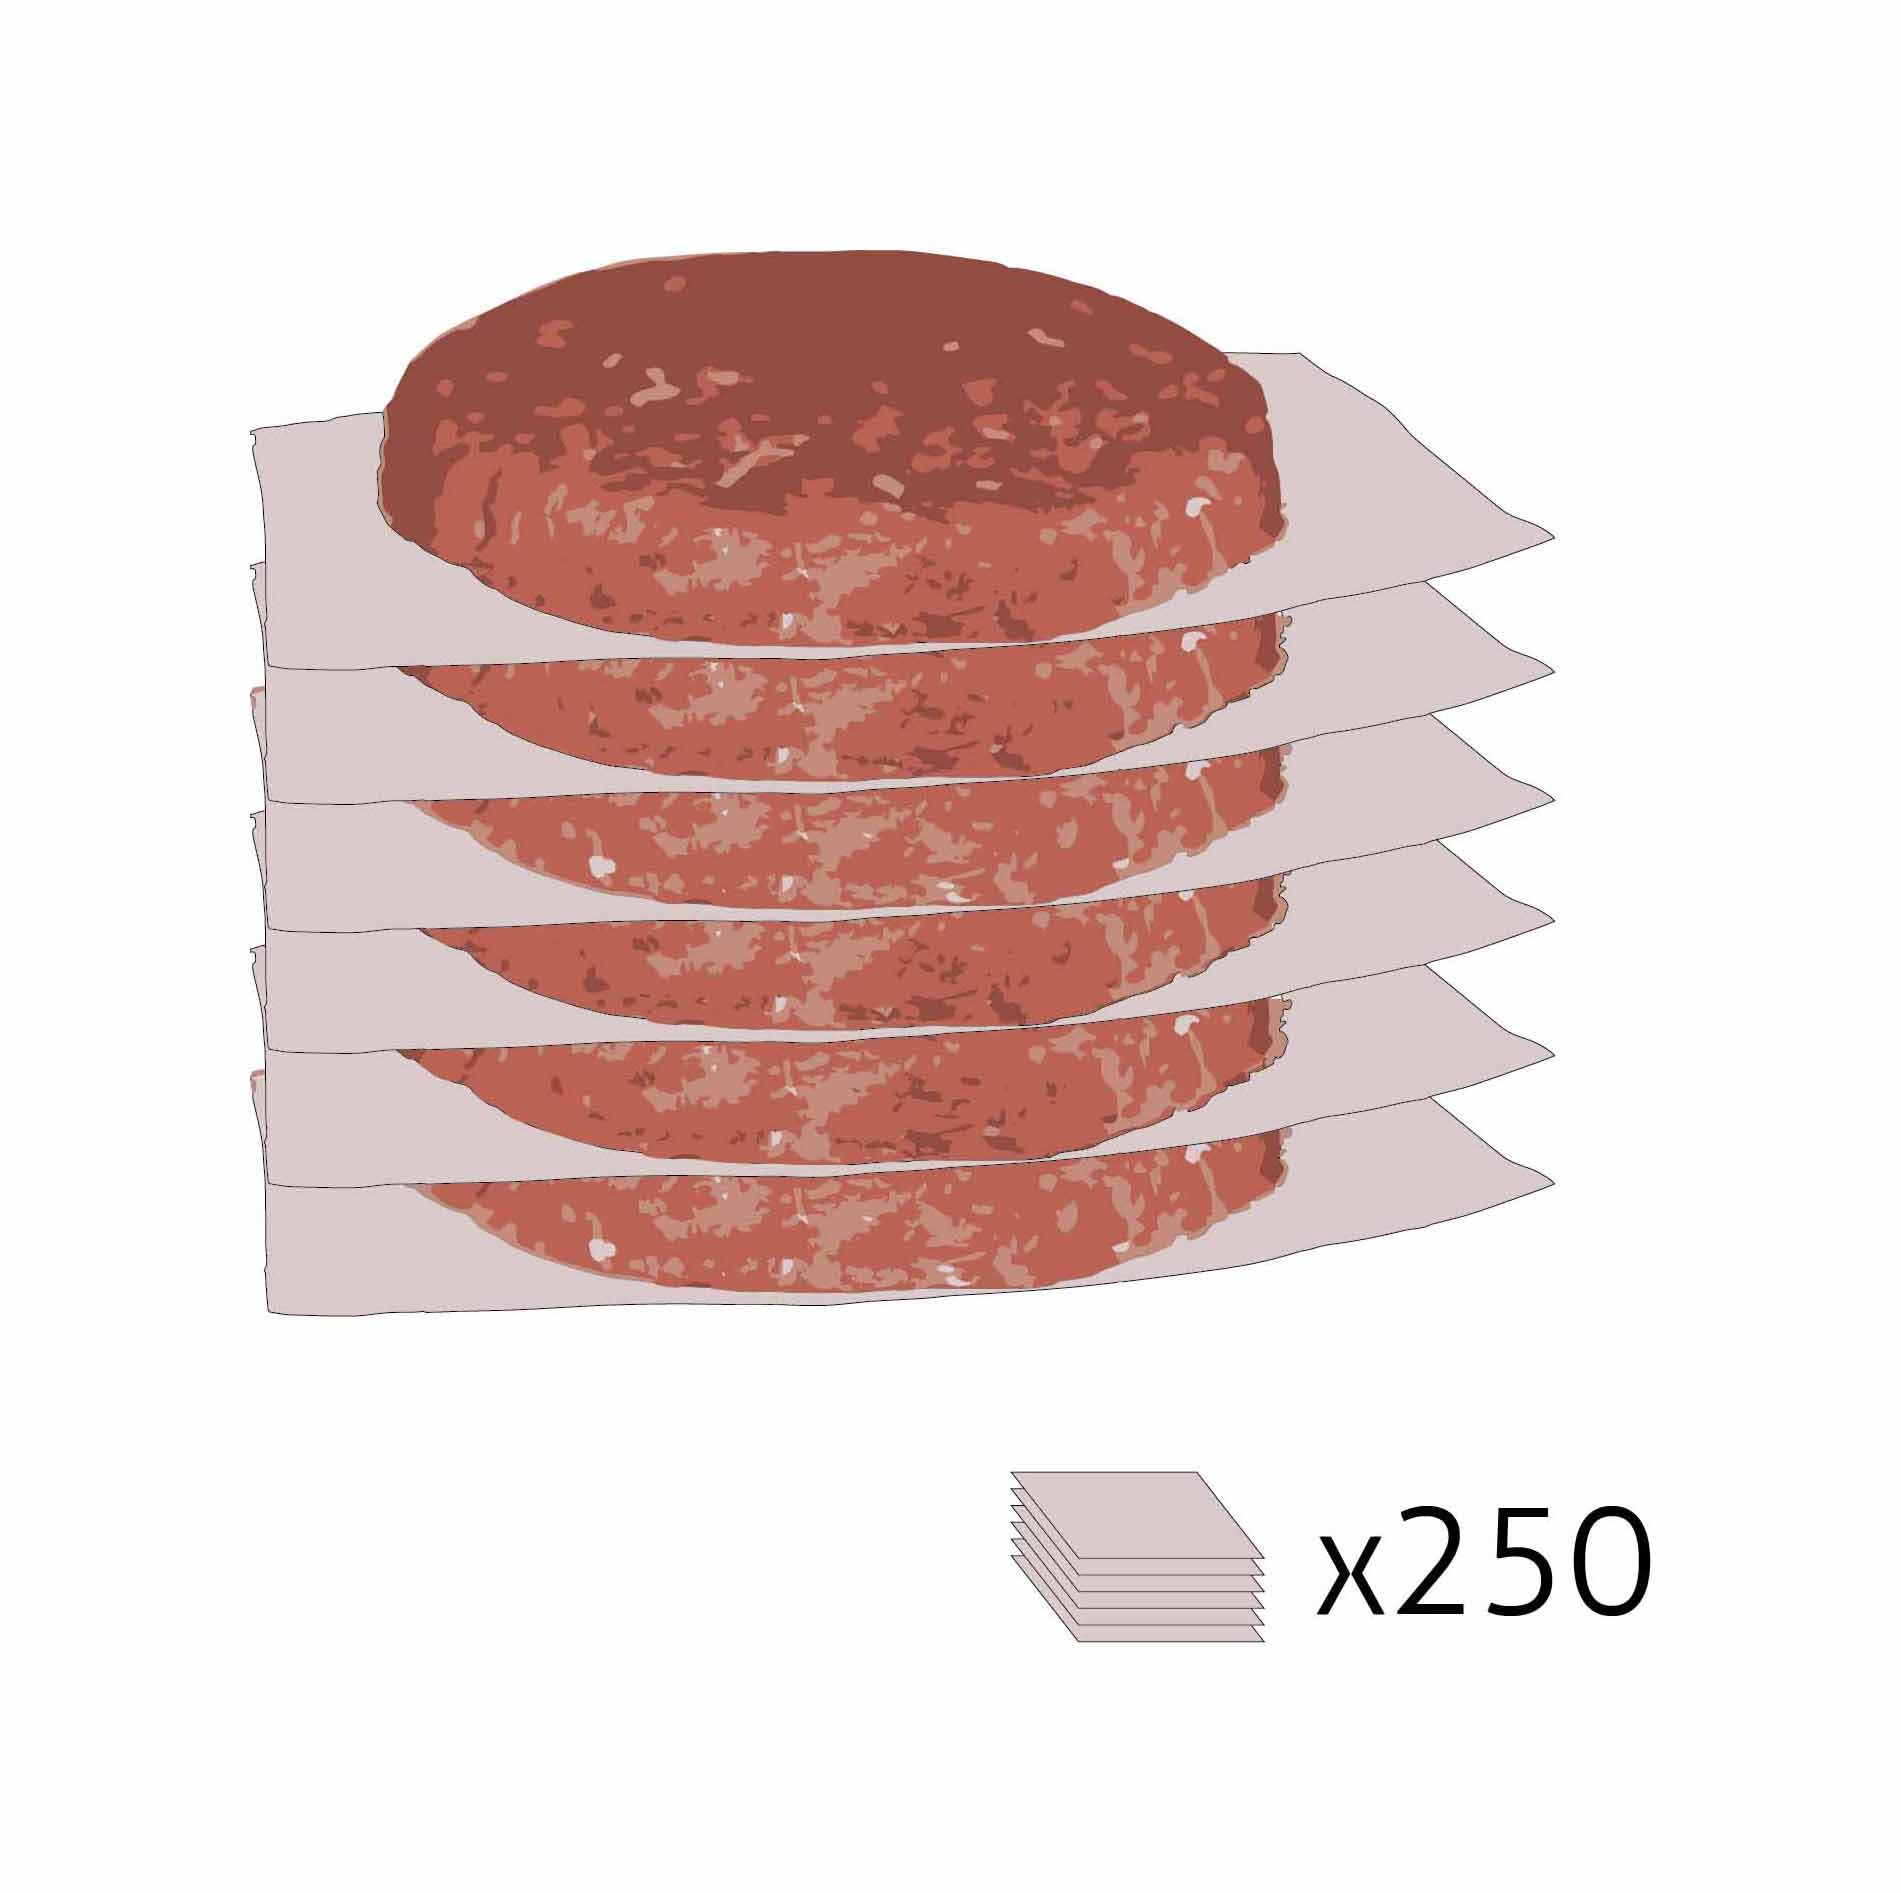 Papierzwischenlagen Für Burger - 250